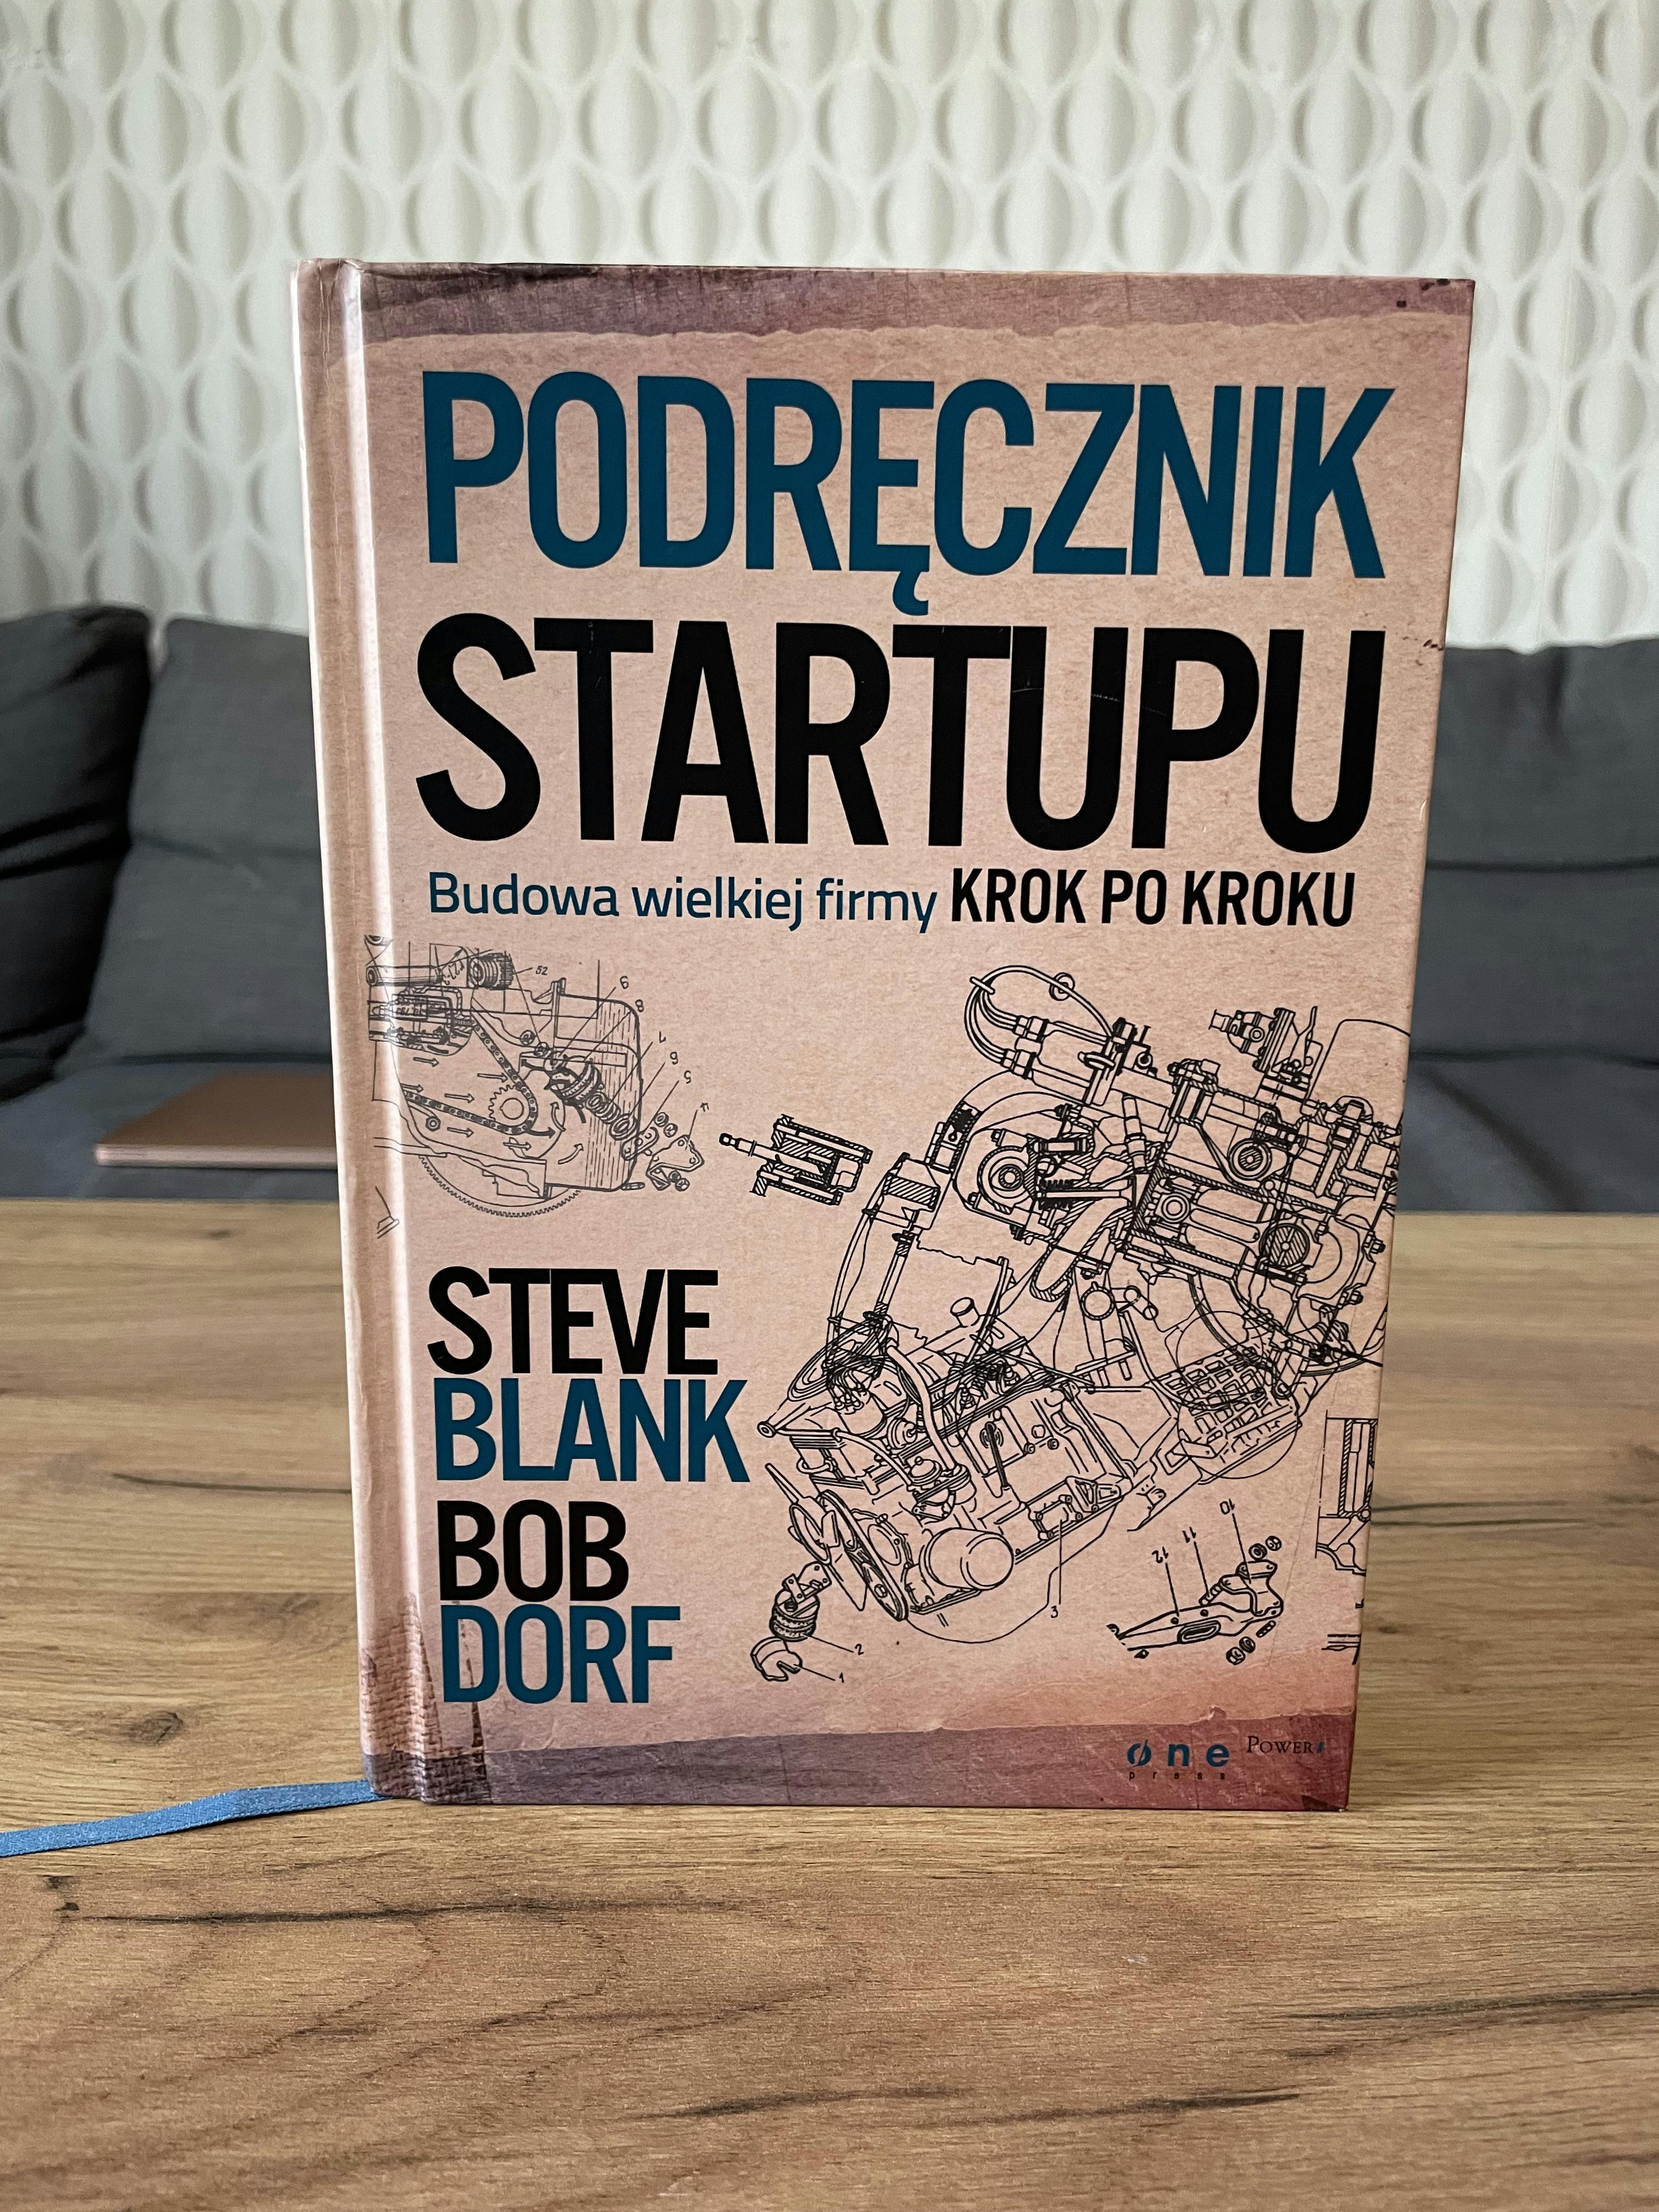 Picture of Książka "Podręcznik Startupu. Budowa wielkiej formy krok po kroku". Autorzy: Steve Blank, Bob Dorf